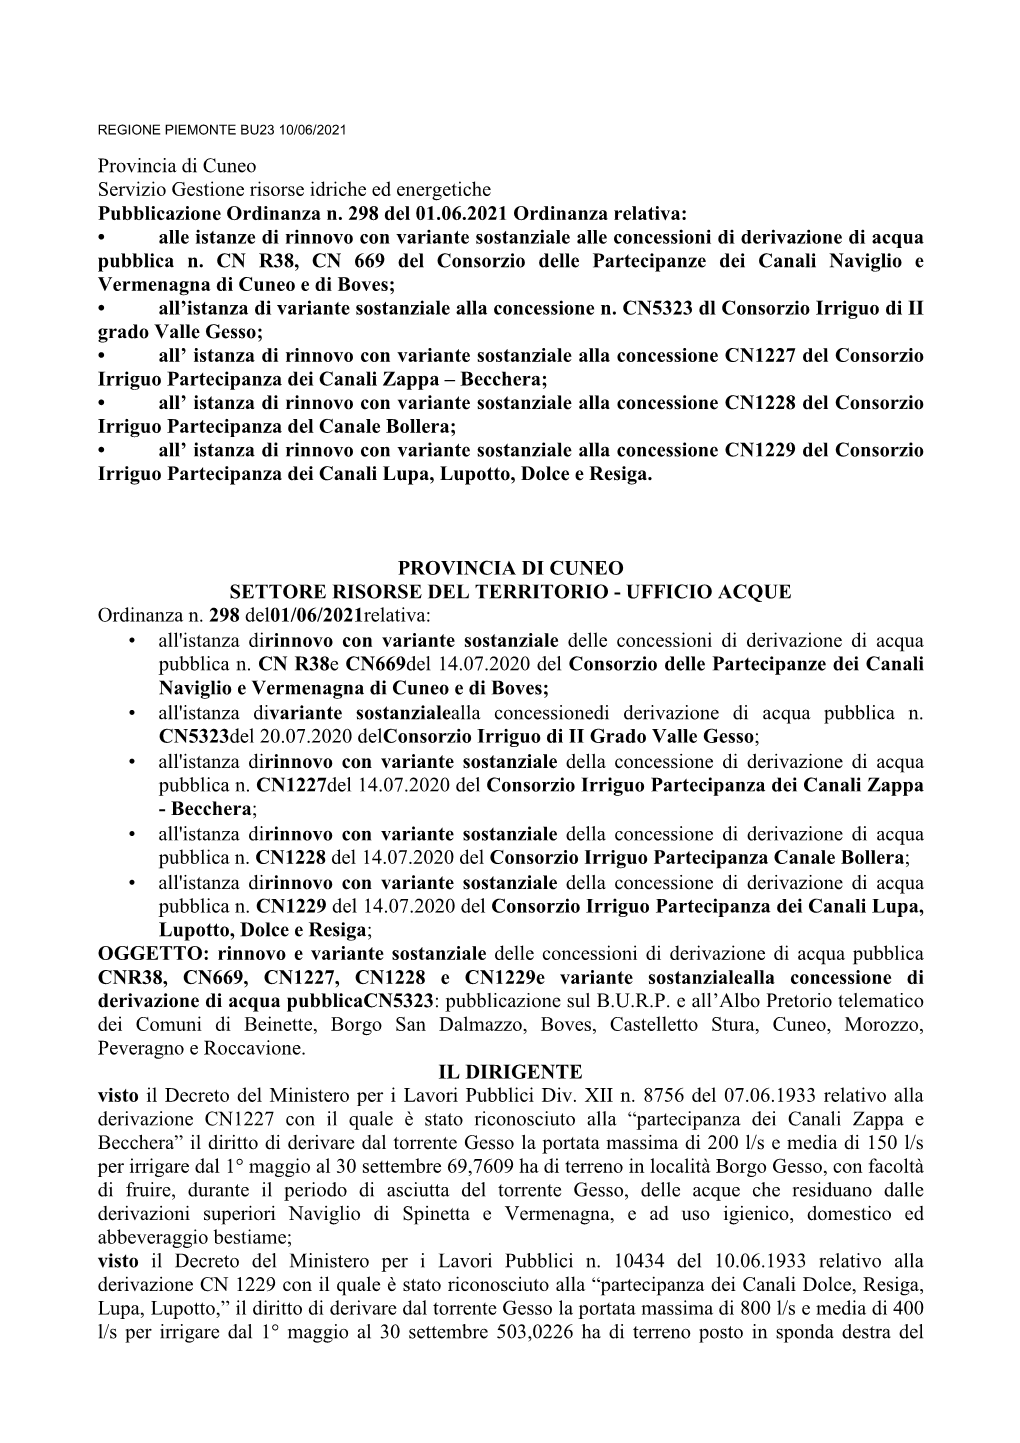 Provincia Di Cuneo Servizio Gestione Risorse Idriche Ed Energetiche Pubblicazione Ordinanza N